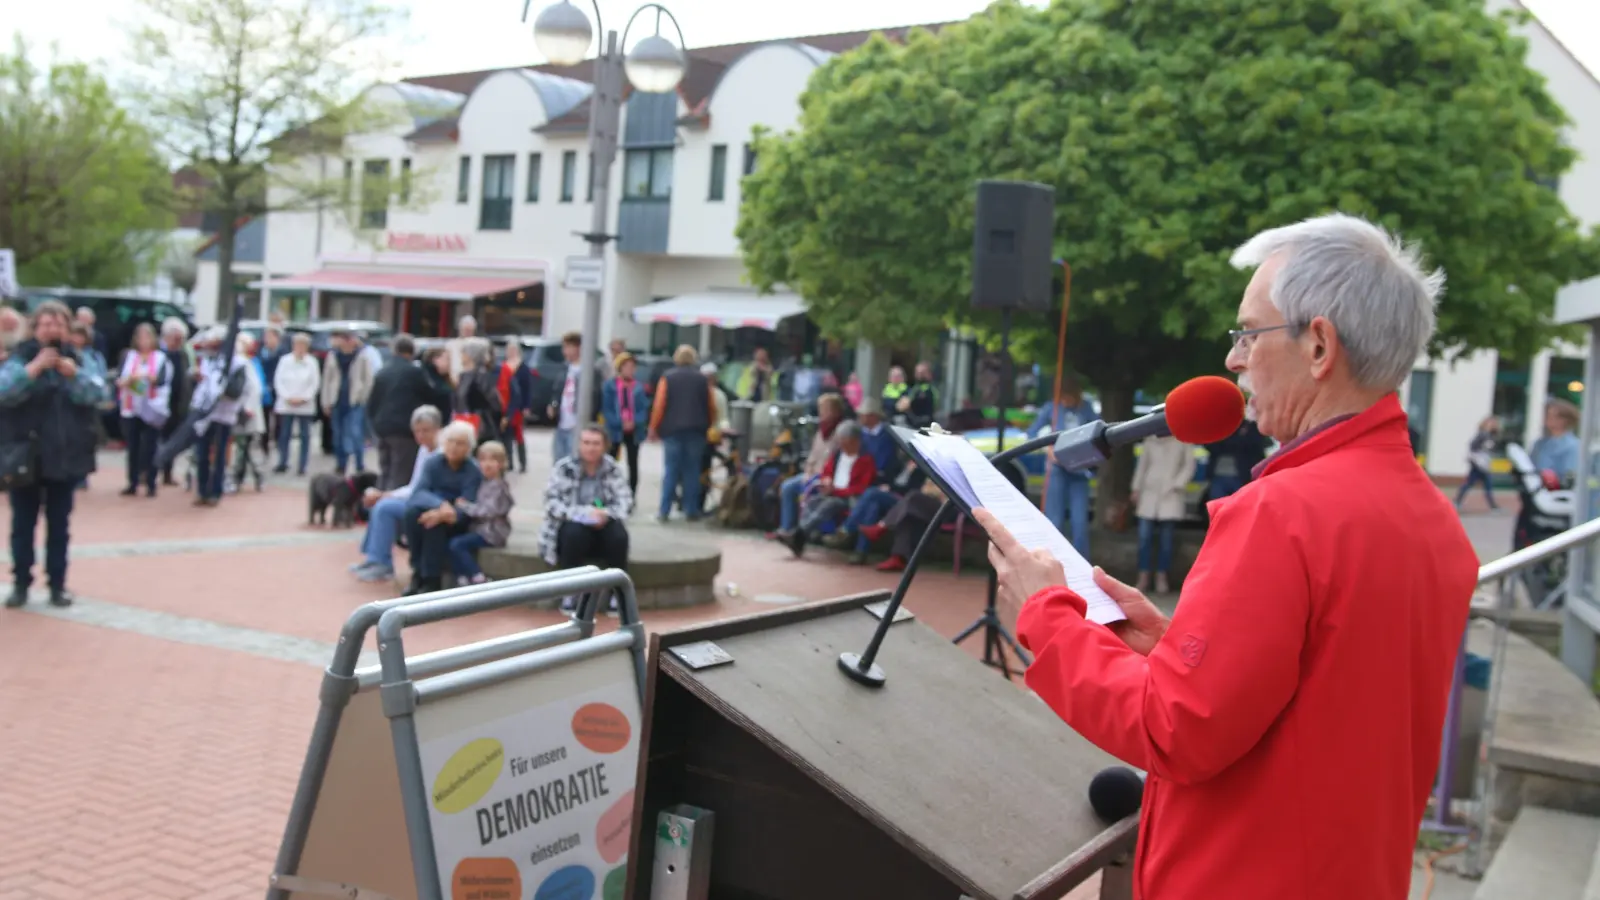 Für Freitag ruft eine Initiative von Bürgern zur letzten Kundgebung für Demokratie vor der Europawahl auf, diesmal auf der Museumsinsel in Rodenberg.  (Foto: bb)